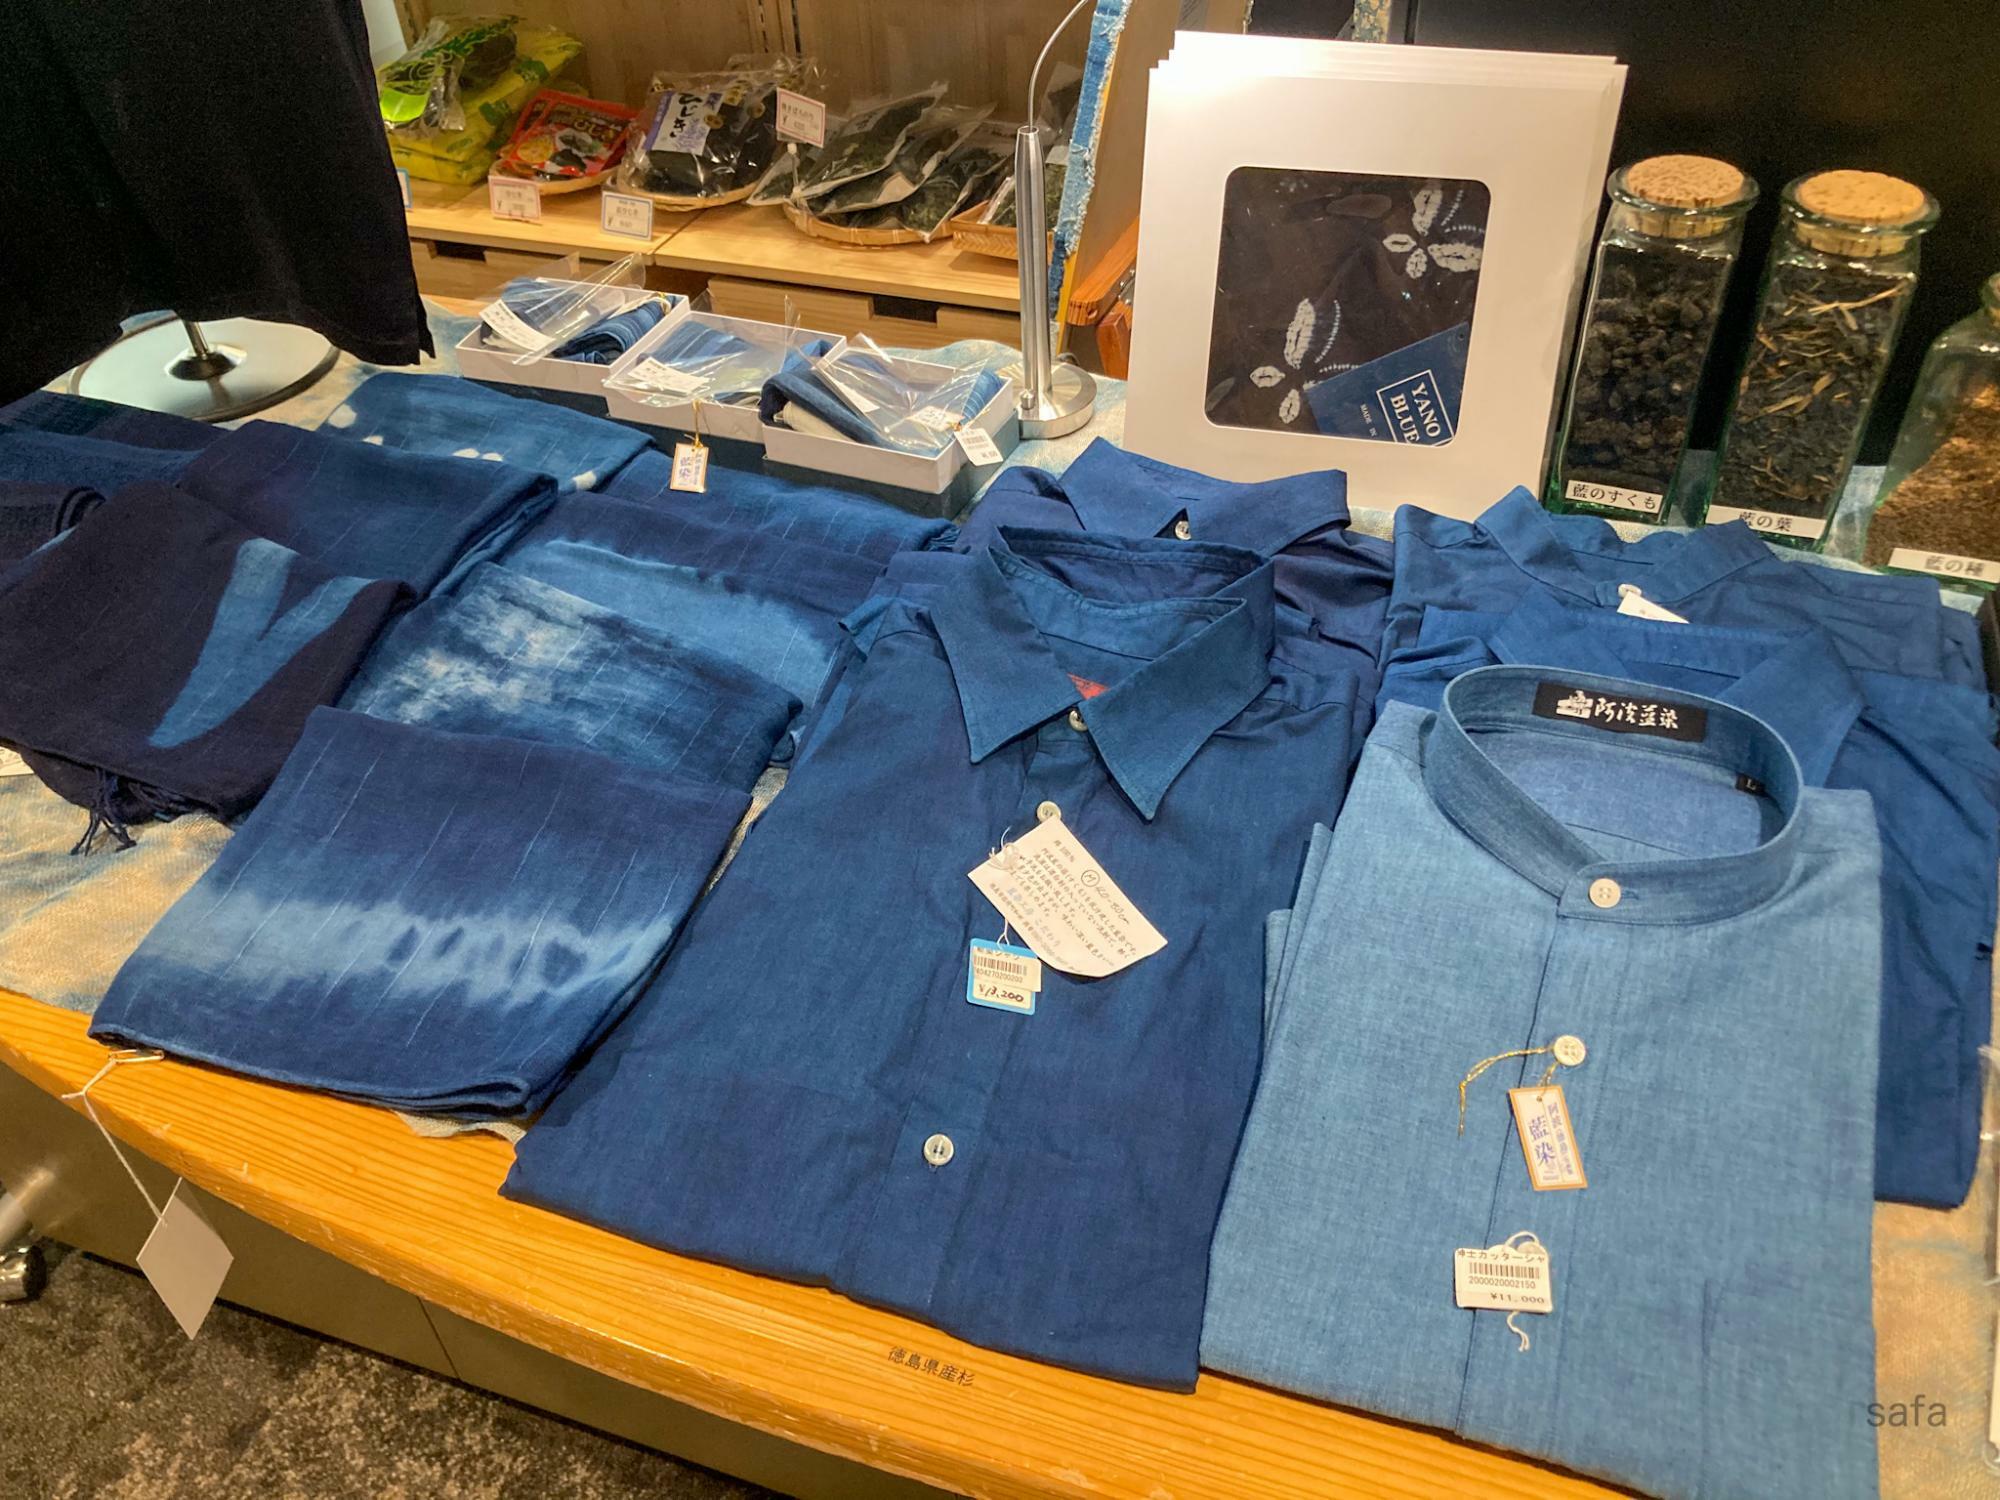 藍染めは、色の美しさと柄の楽しさが魅力。滲み模様を生み出す「絞り染め」の技法は100種類以上とも。写真のシャツは、左から13,200円、11,000円。父の日の贈り物にいかがでしょう。